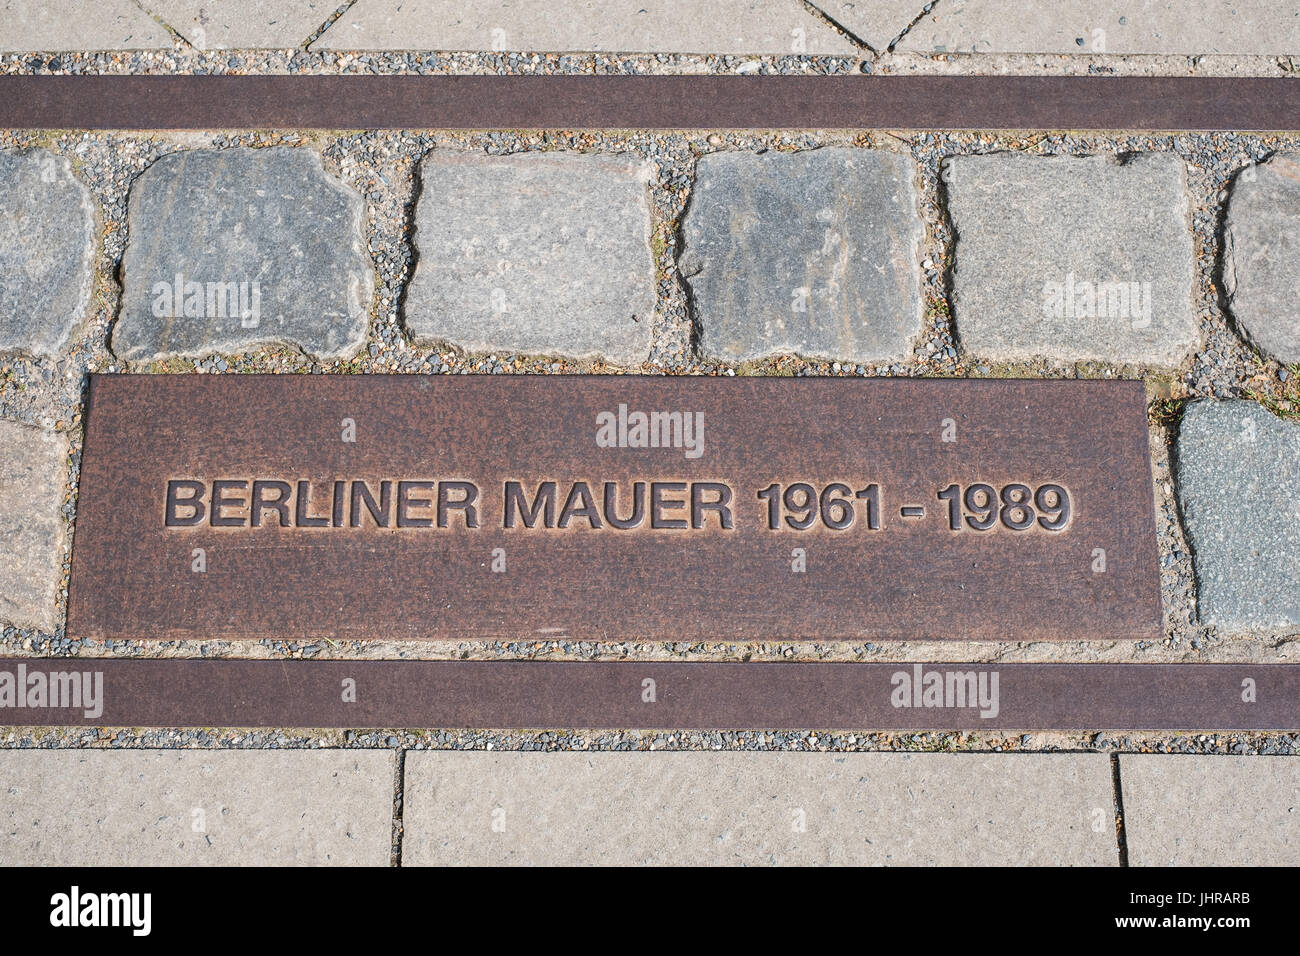 Berlin, Germany - July 13, 2017: Berliner Mauer ( Berlin Wall) / memorial on sidewalk   at Bernauer Strasse in Berlin, Germany. Stock Photo